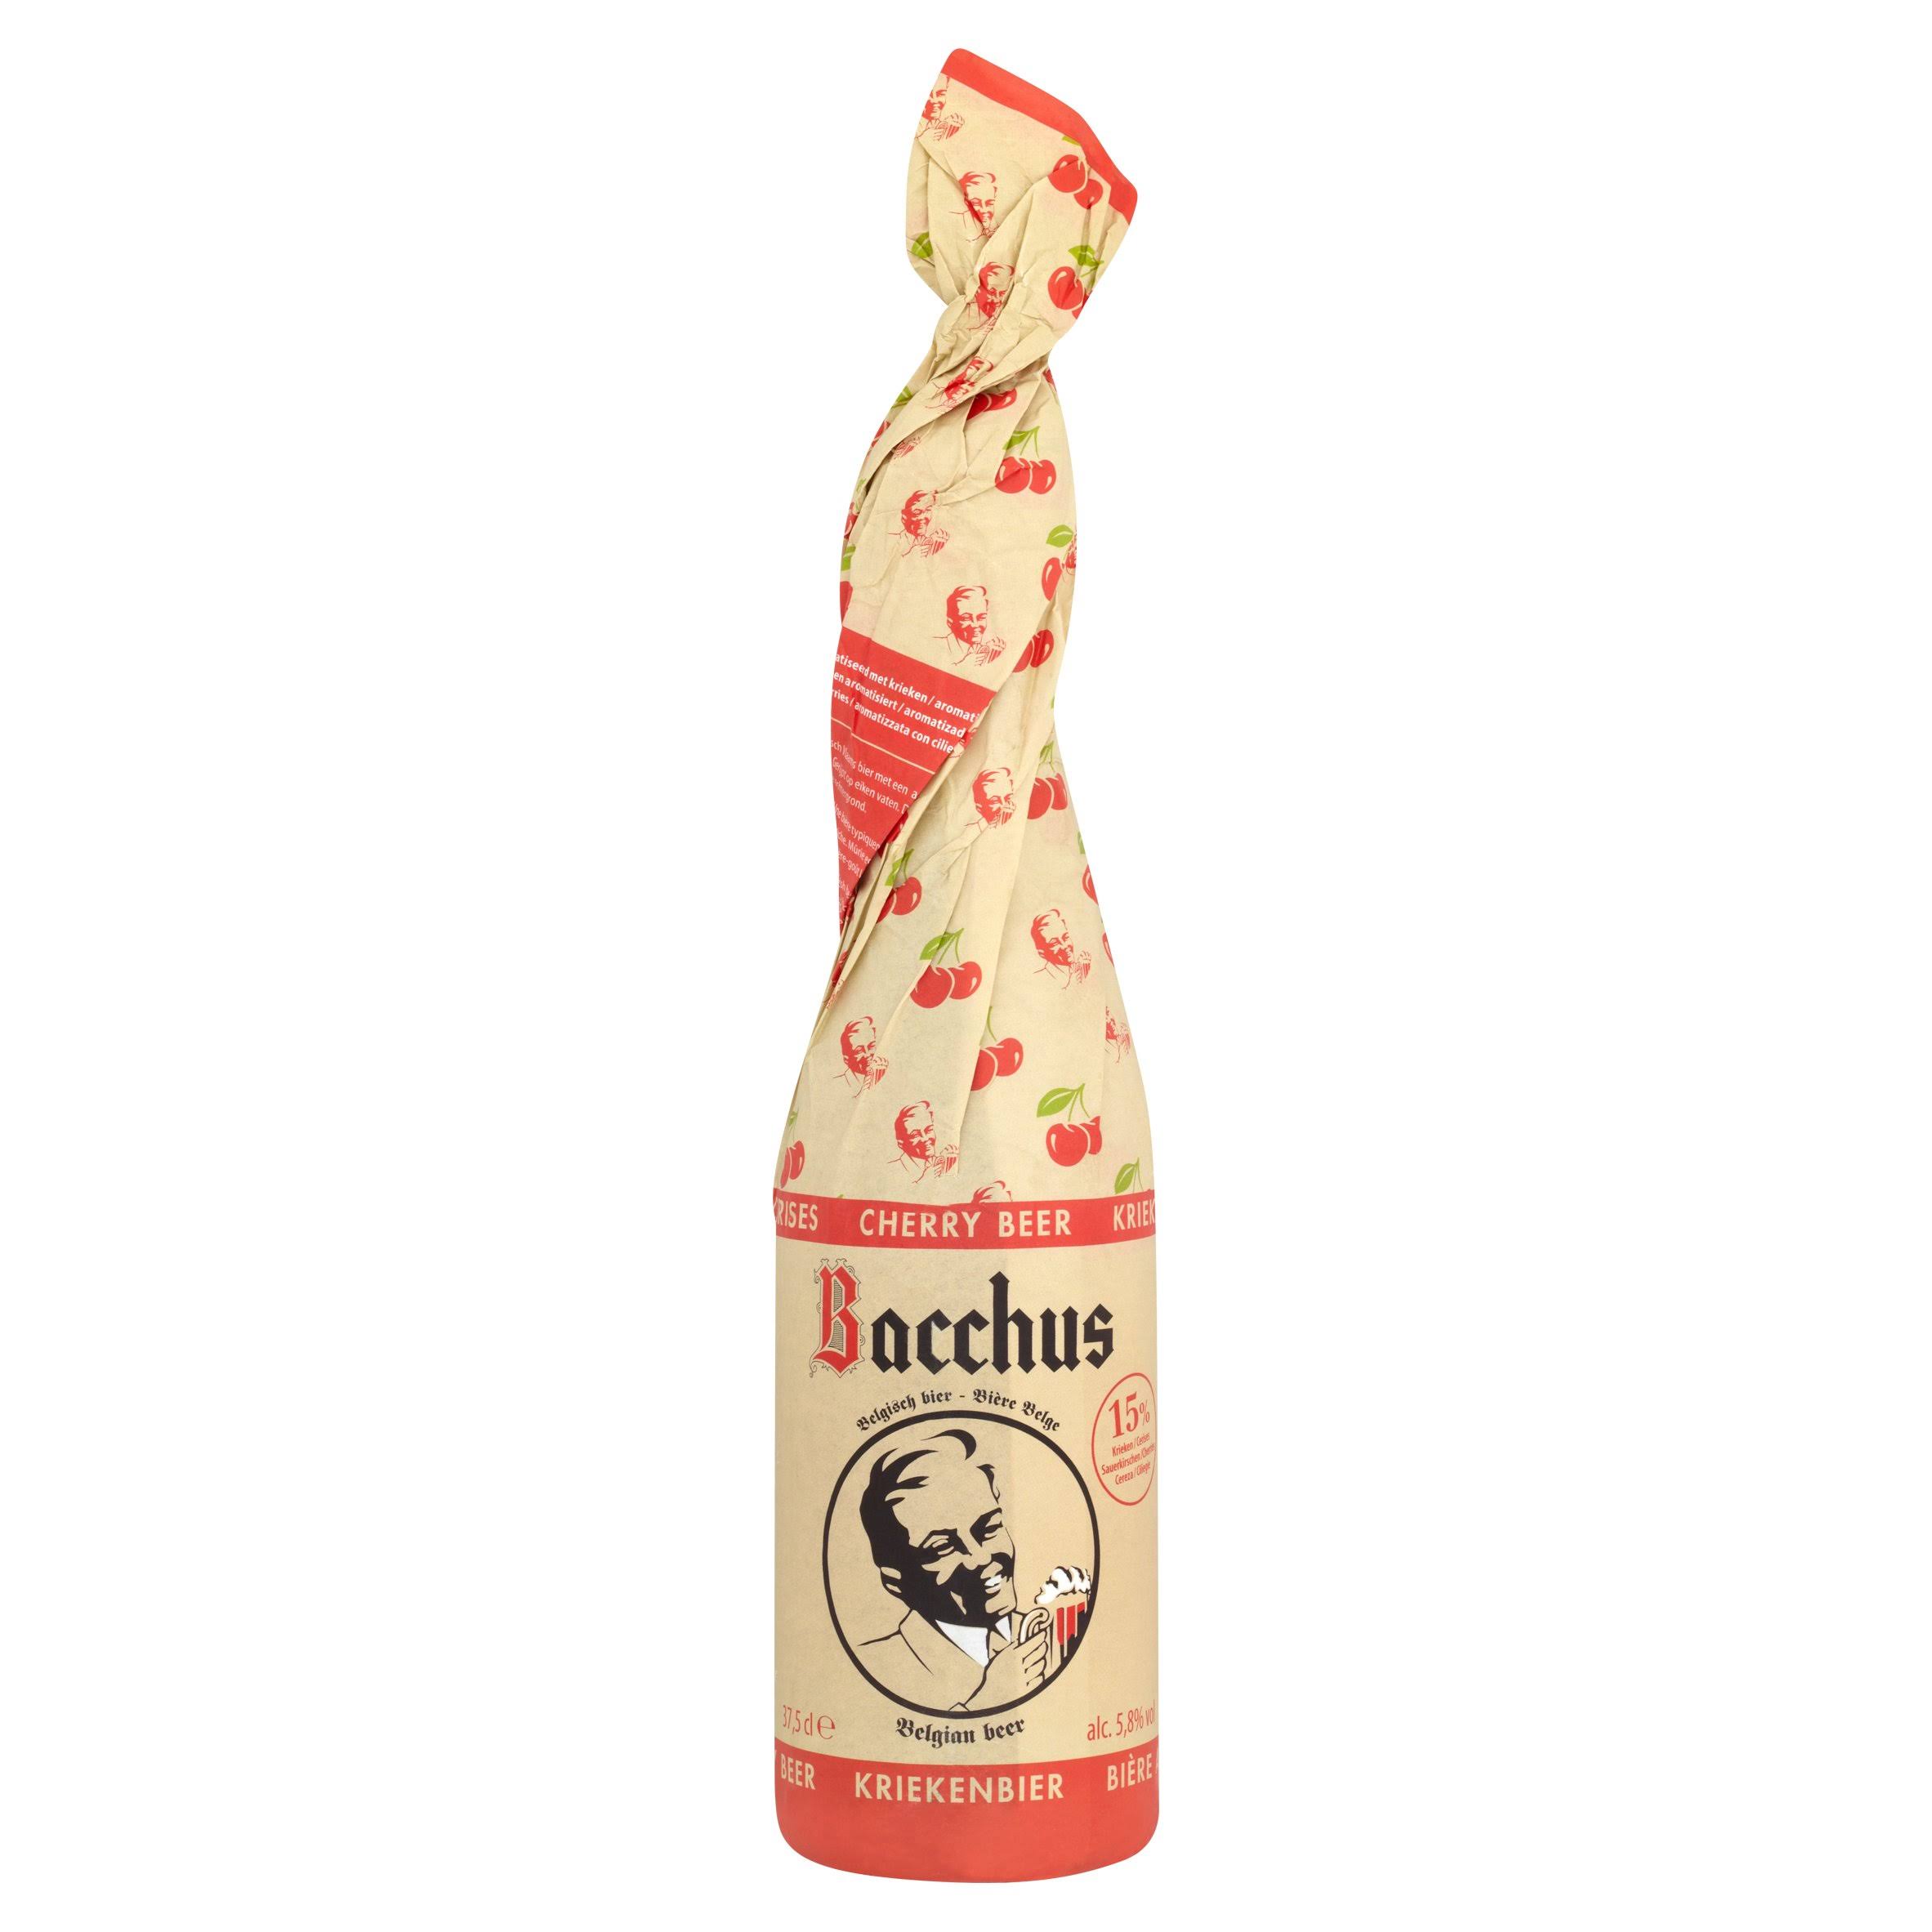 Bacchus Cherry Beer - 375ml